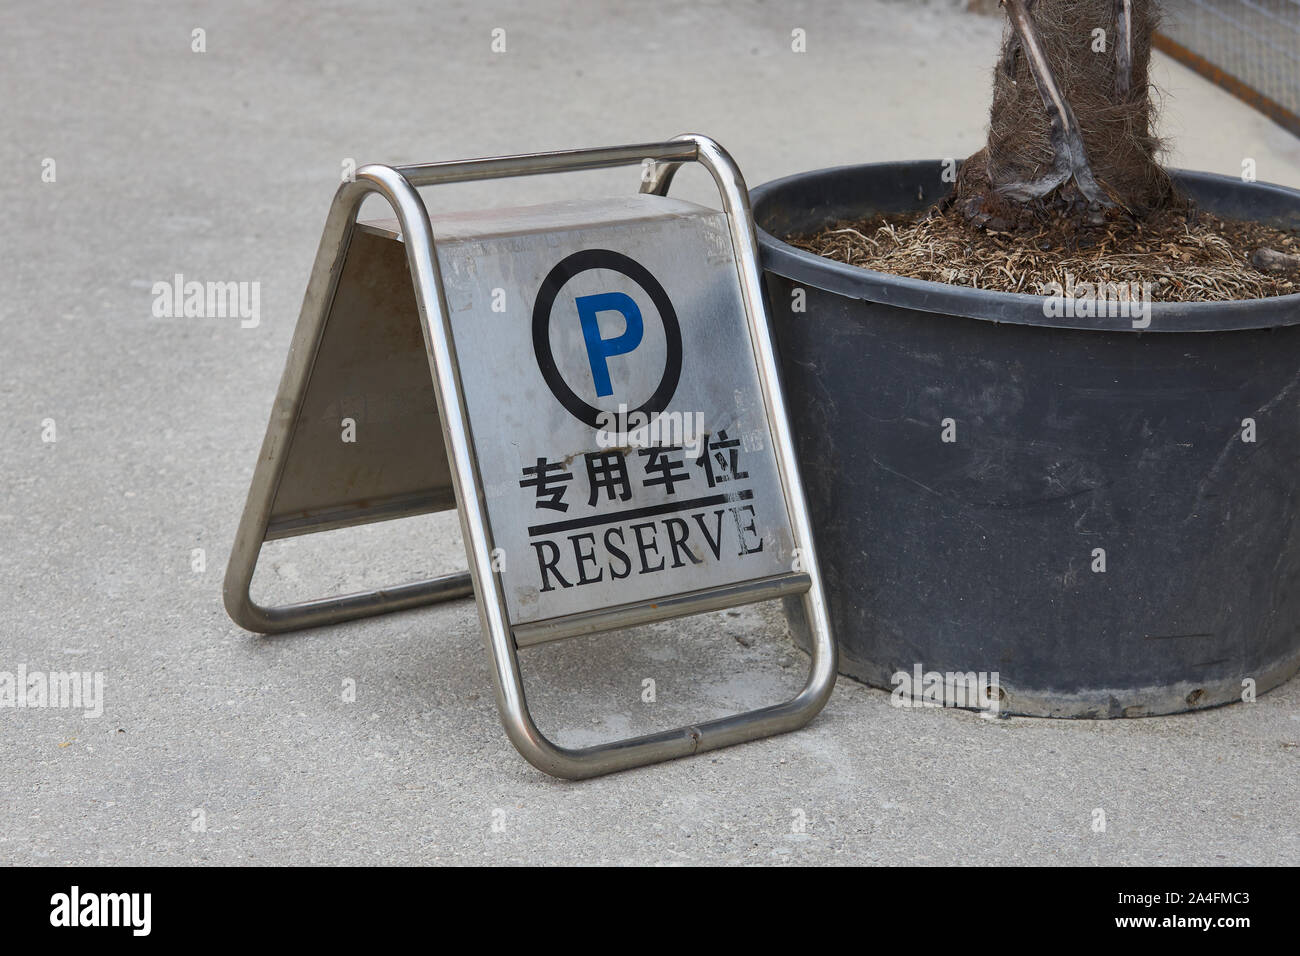 Letrero metálico para reservar una plaza de aparcamiento con una inscripción en diferentes idiomas. Foto de stock